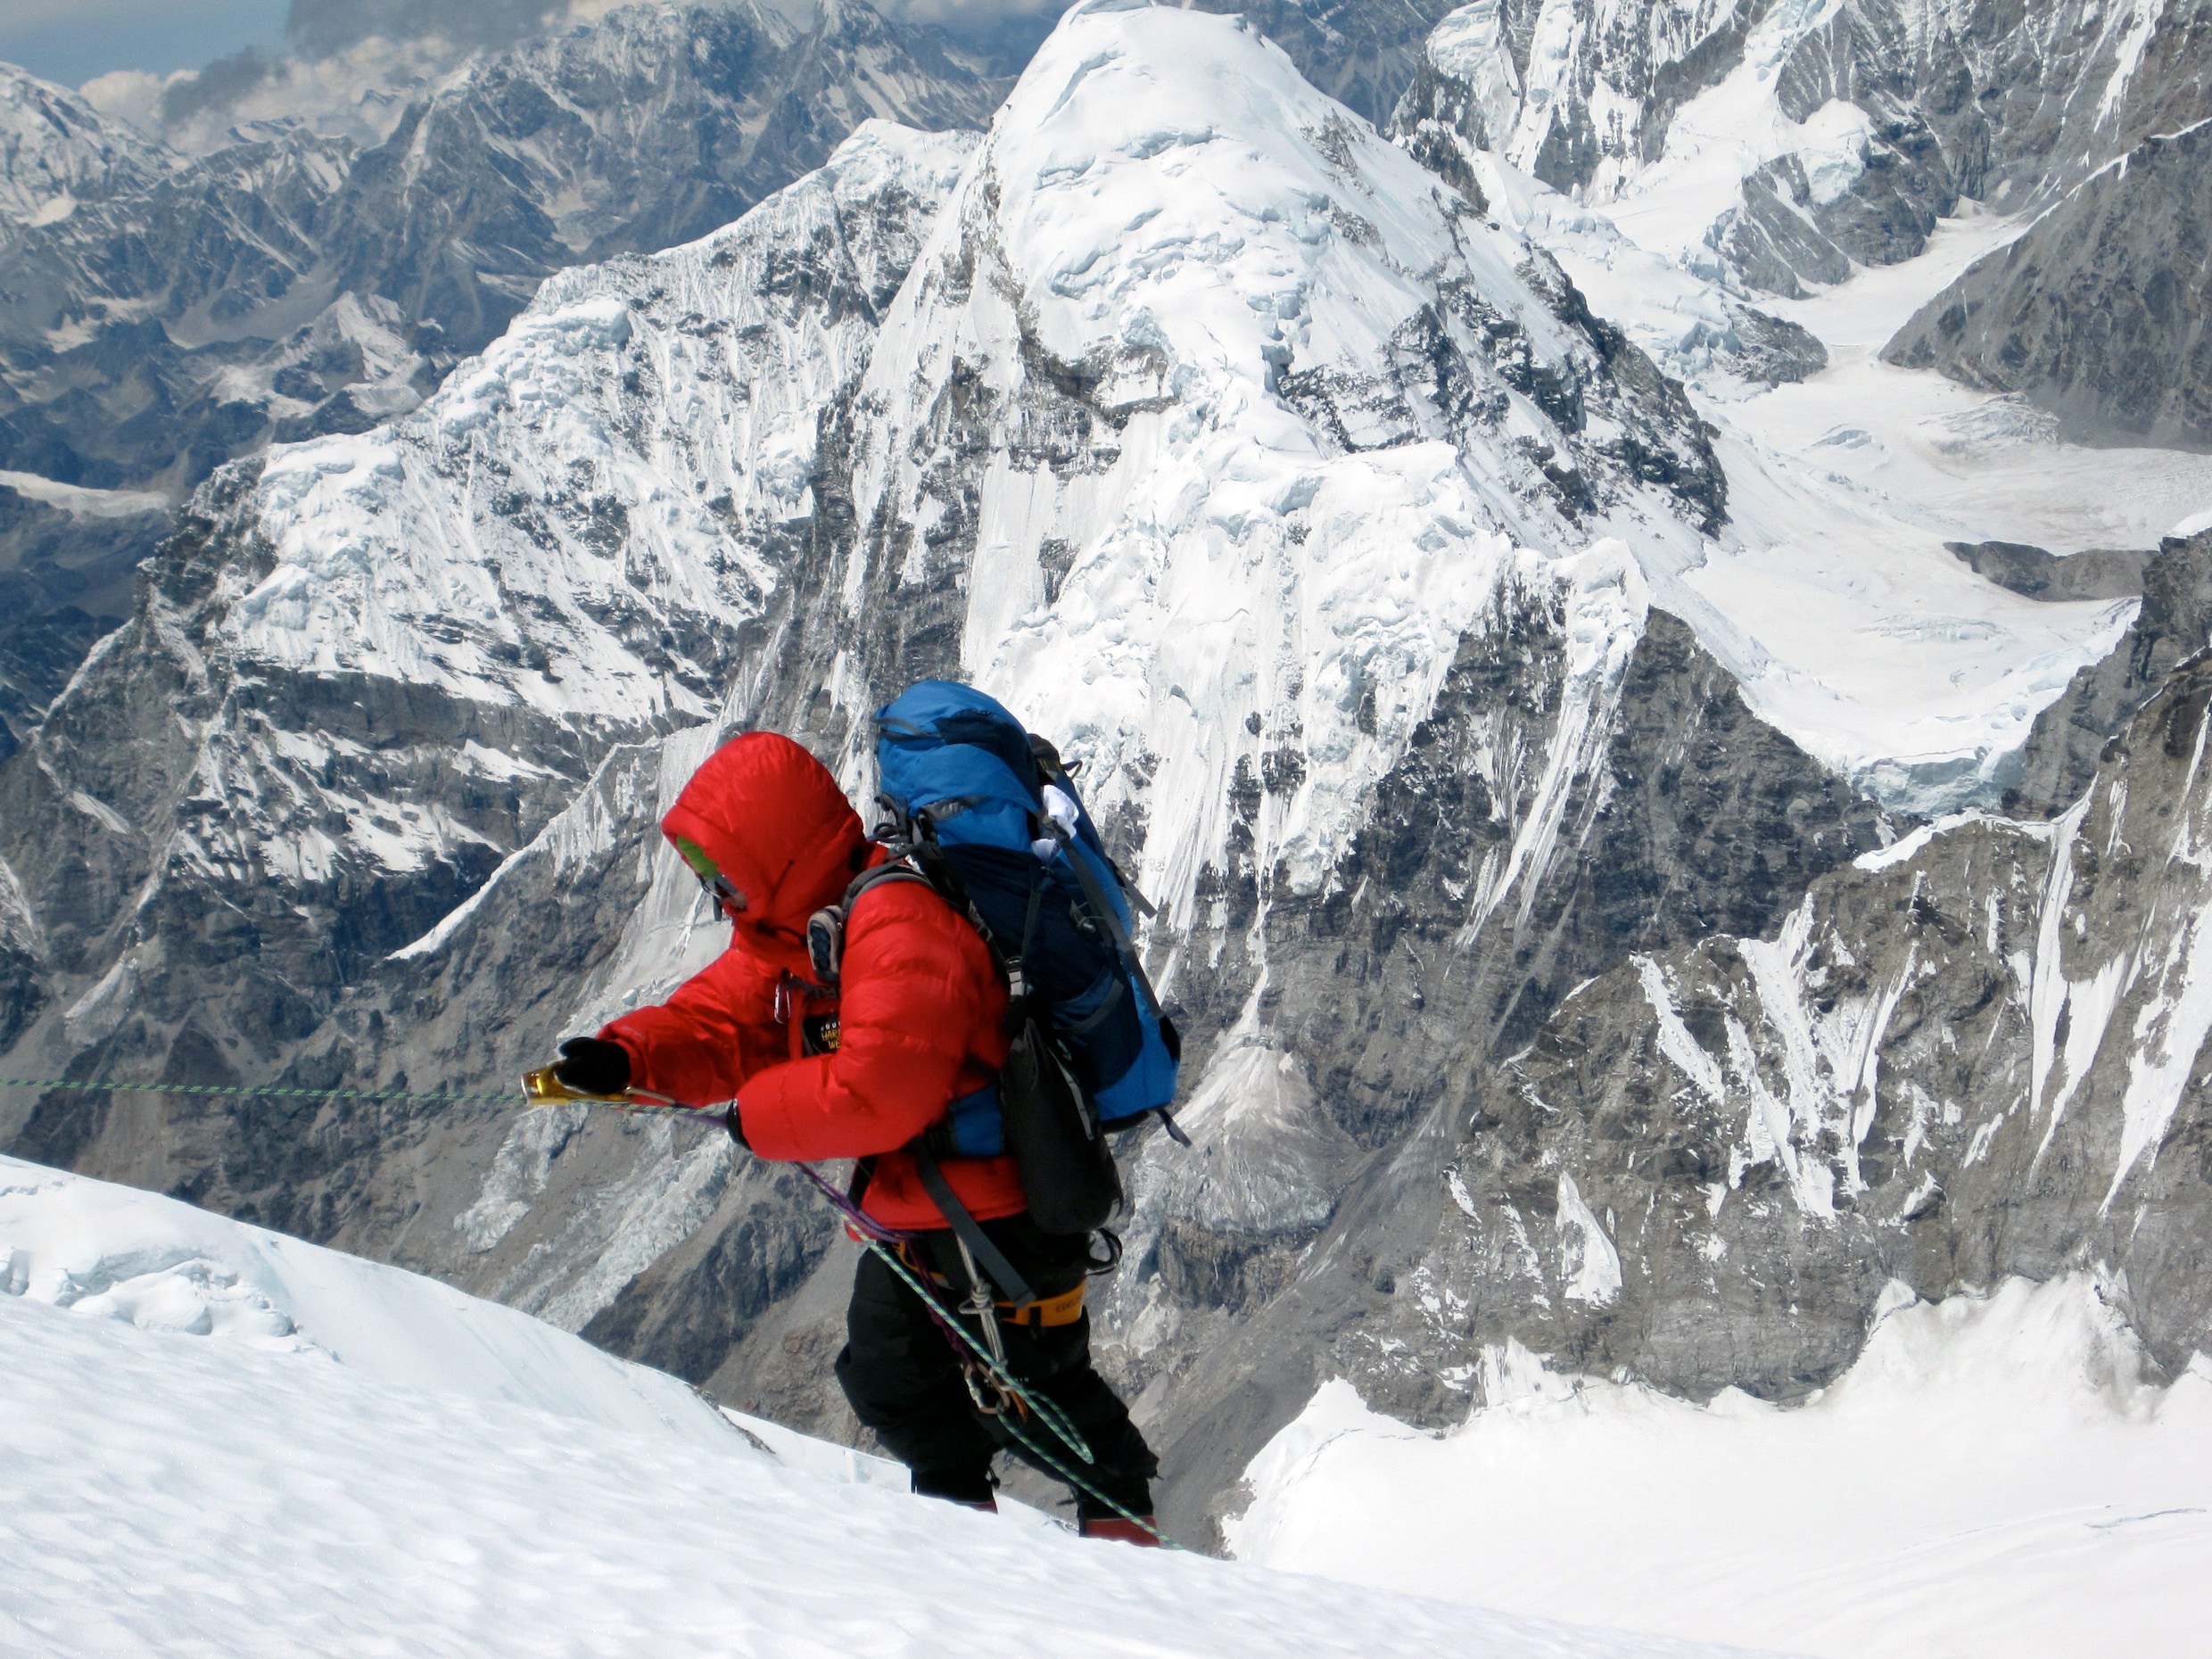 Onrust onder alpinisten door falend klimmateriaal: ‘Velen praten niet over de doden, omdat ze bang zijn’